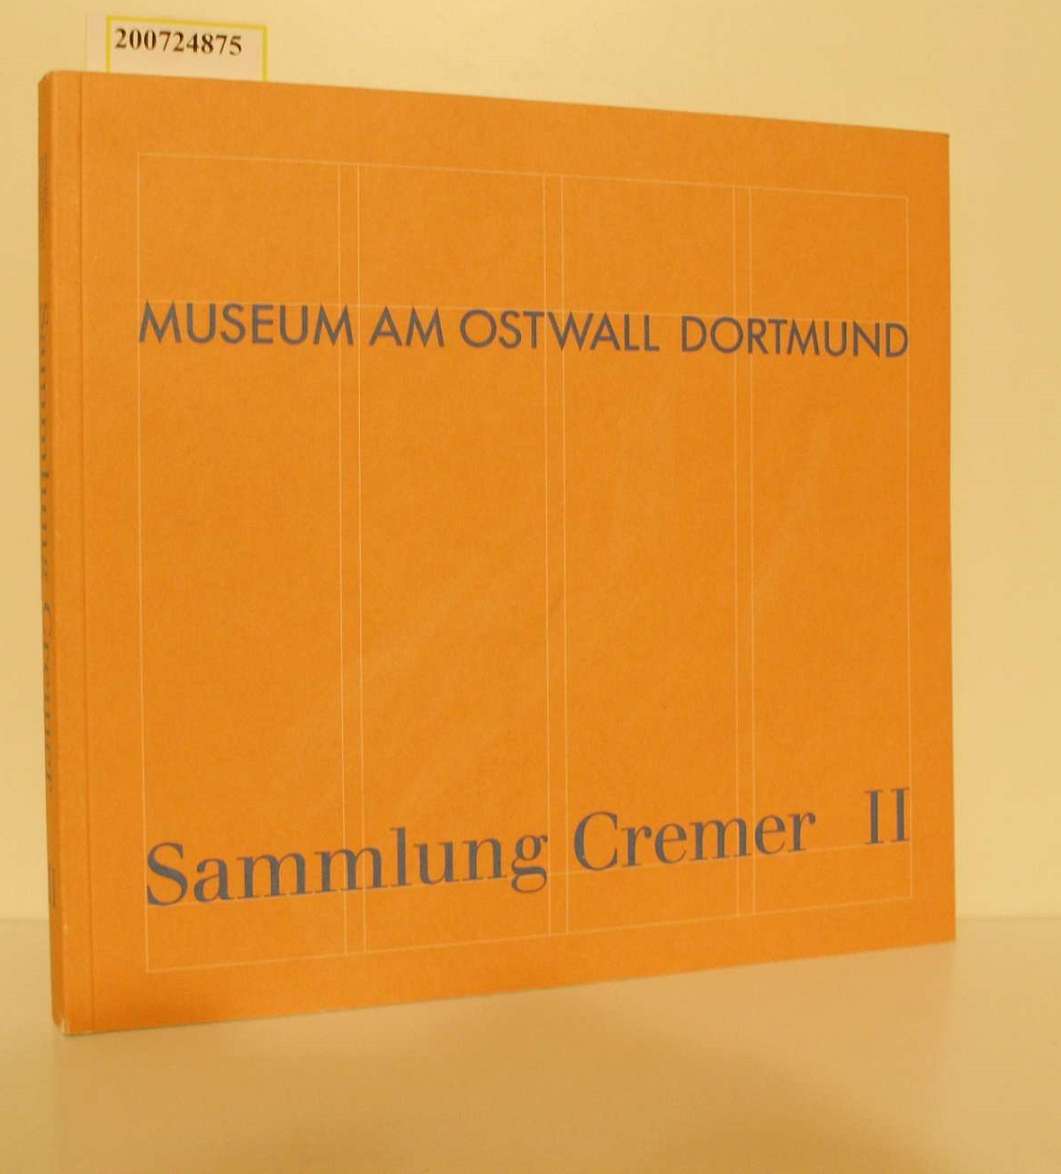 Sammlung Cremer. - Dortmund : Museum am Ostwall